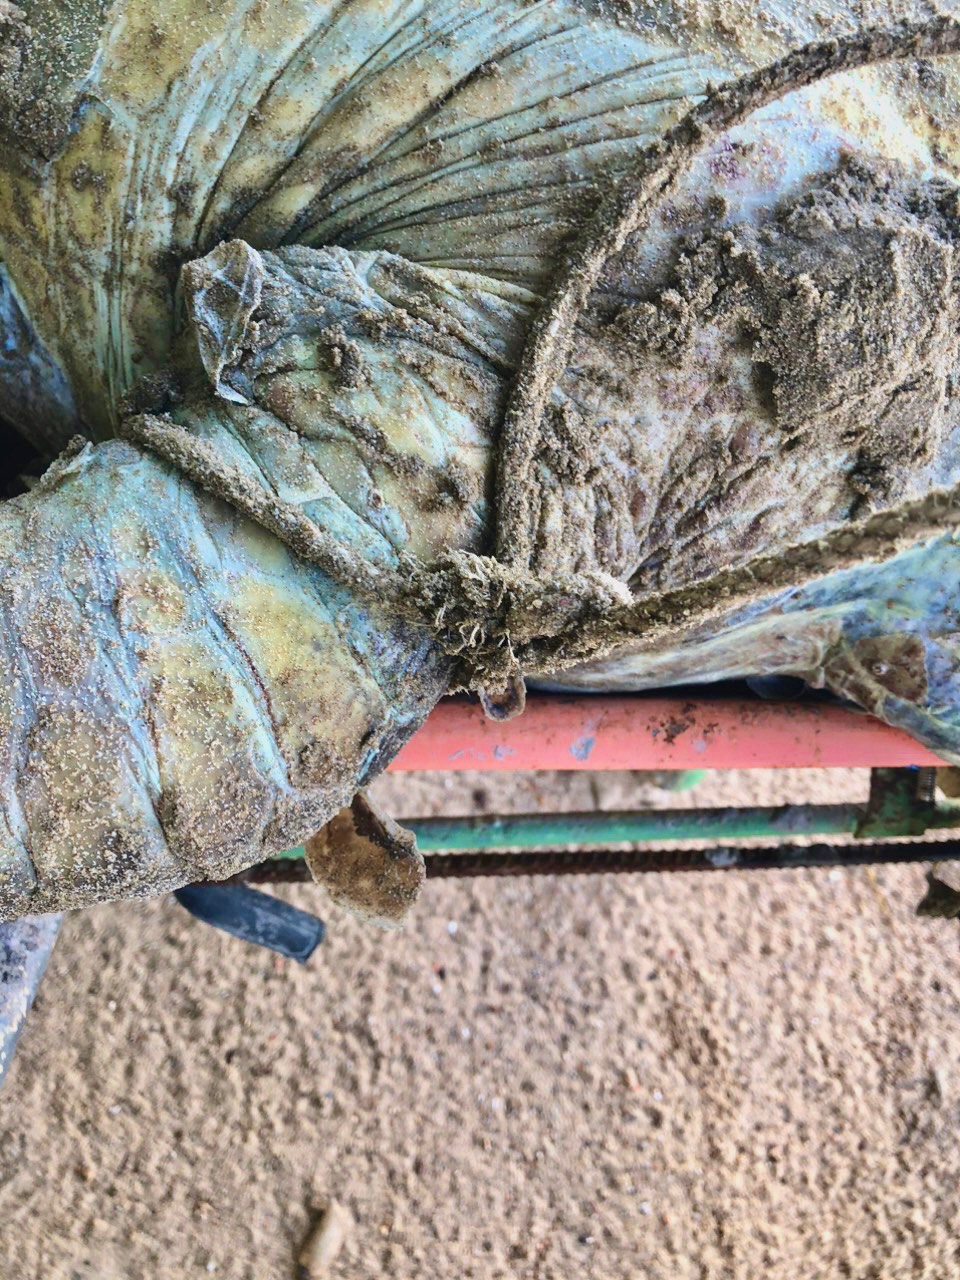 Hình ảnh rùa biển 85kg nghi bị giết để lấy trứng khiến nhiều người bức xúc - Ảnh 6.